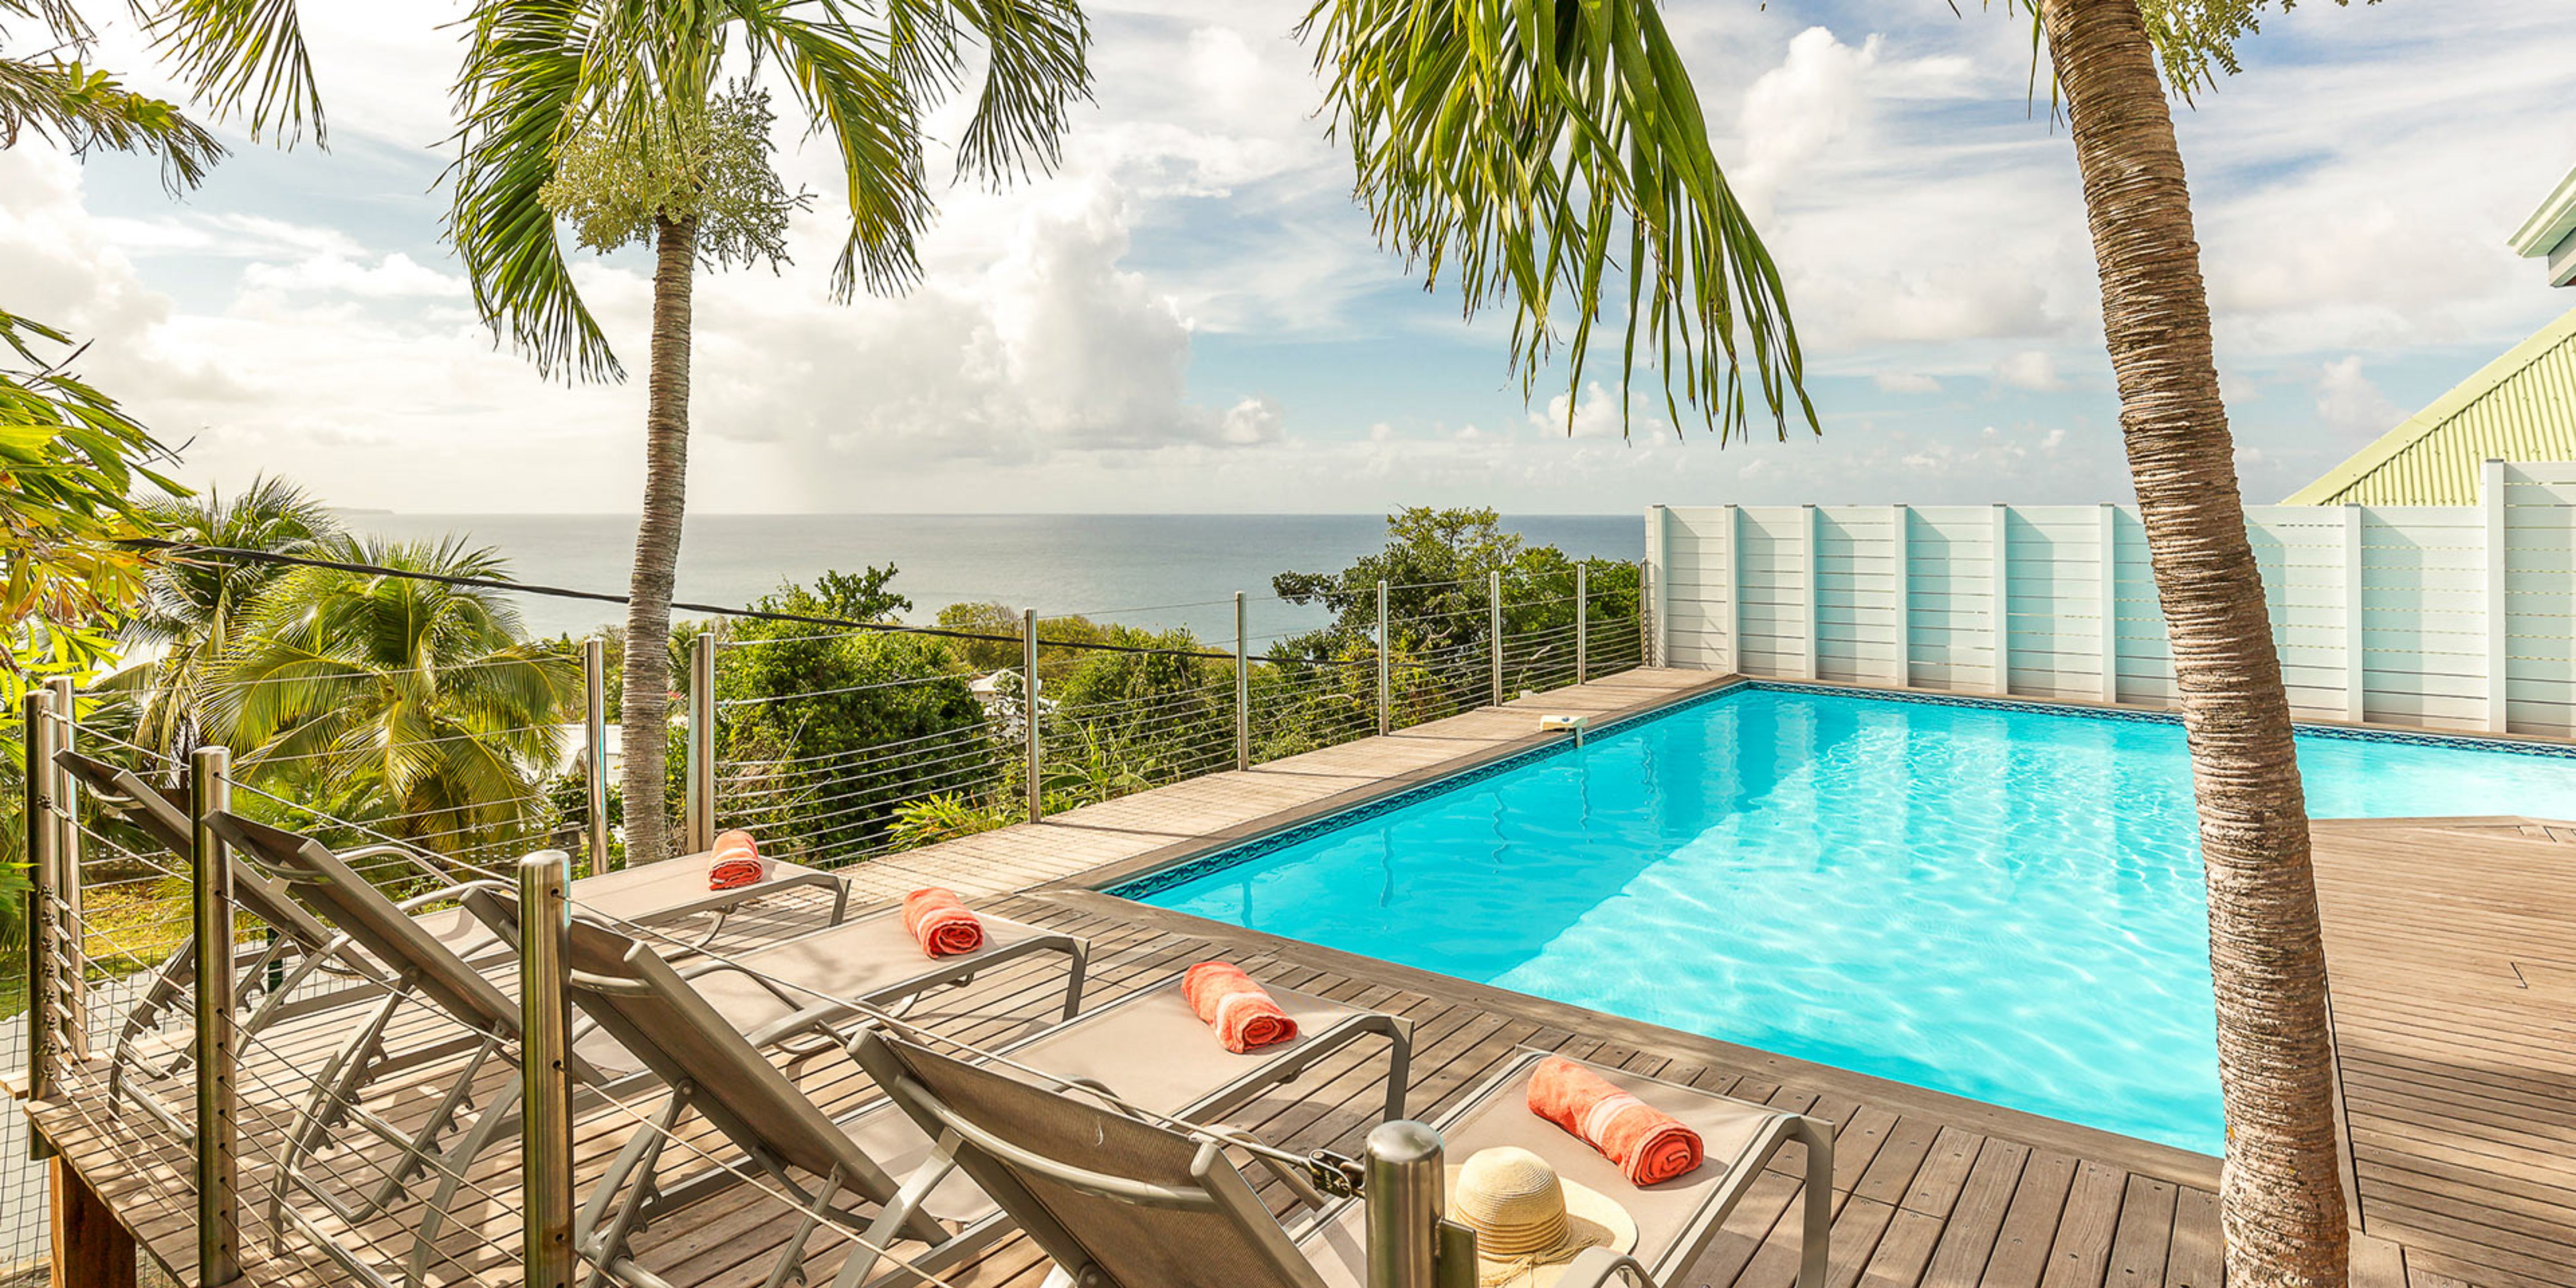 La vue depuis la terrasse de la piscine de la villa en Martinique